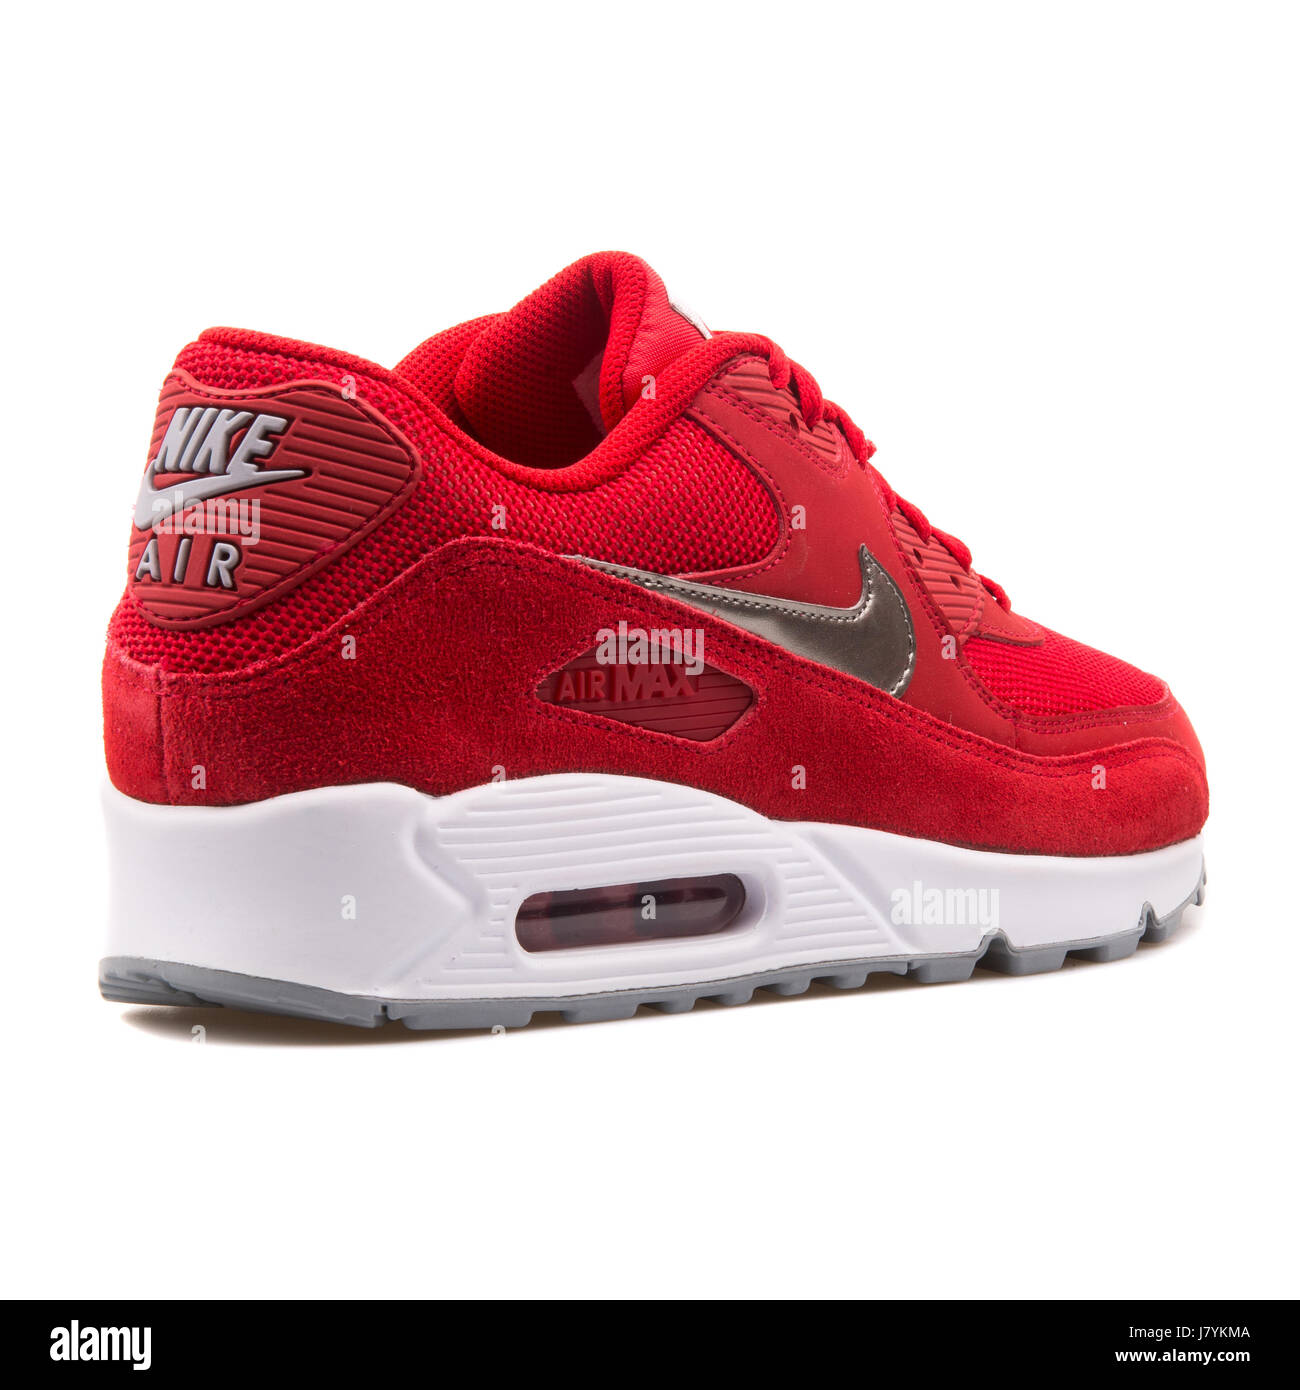 Nike Air Max 90 Men's rojo esencial ejecutando Sneakers - 537384-602 Fotografía stock -